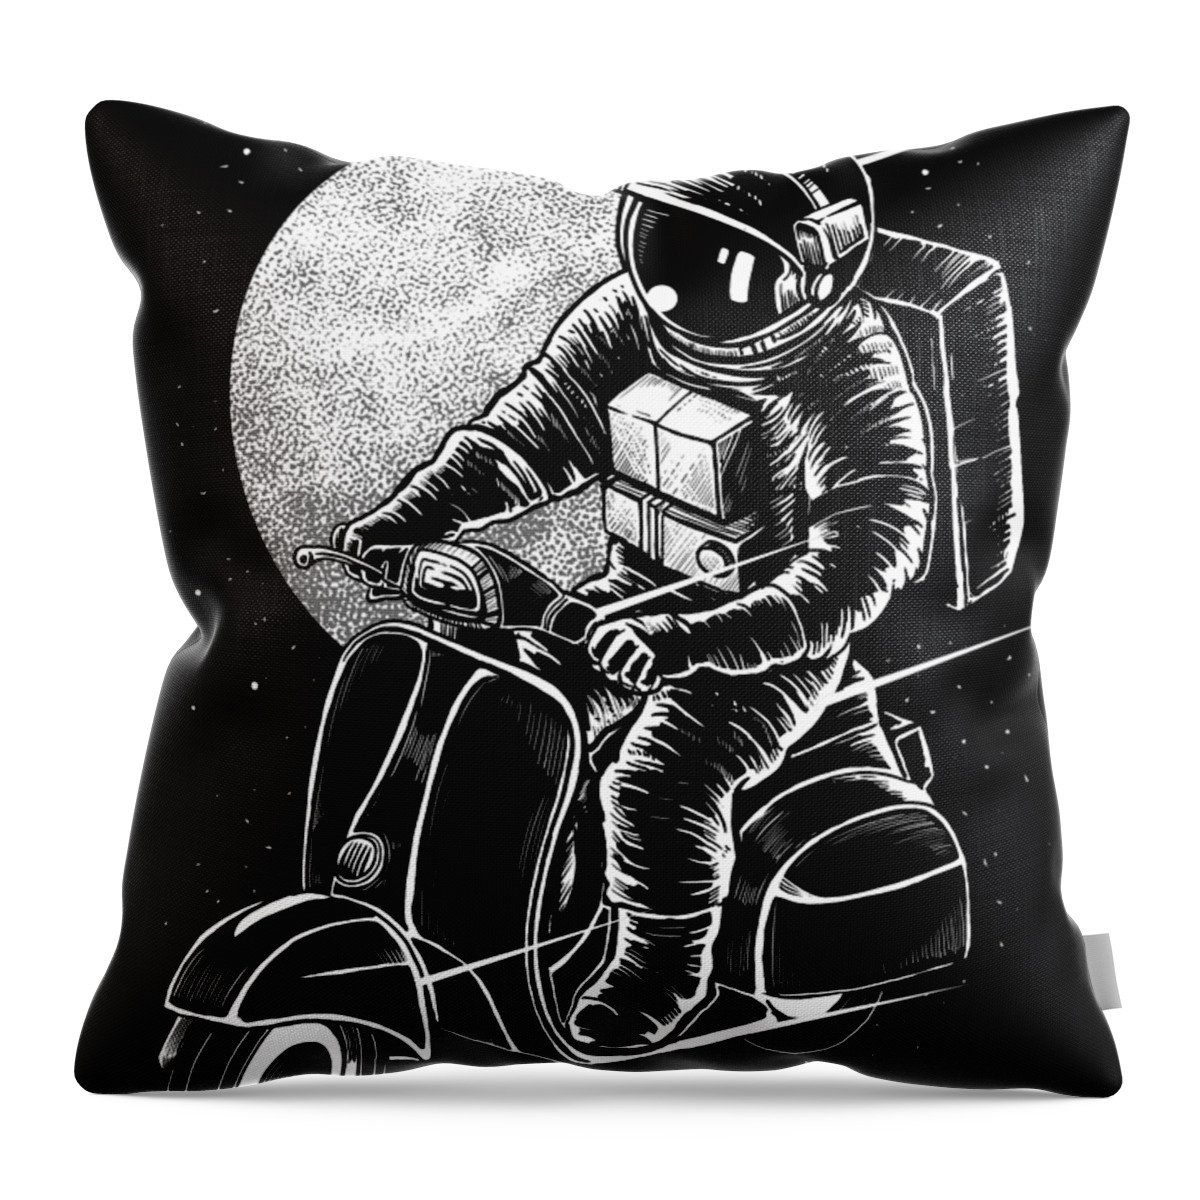 Astronaut Throw Pillow featuring the digital art Astronaut biker by Long Shot